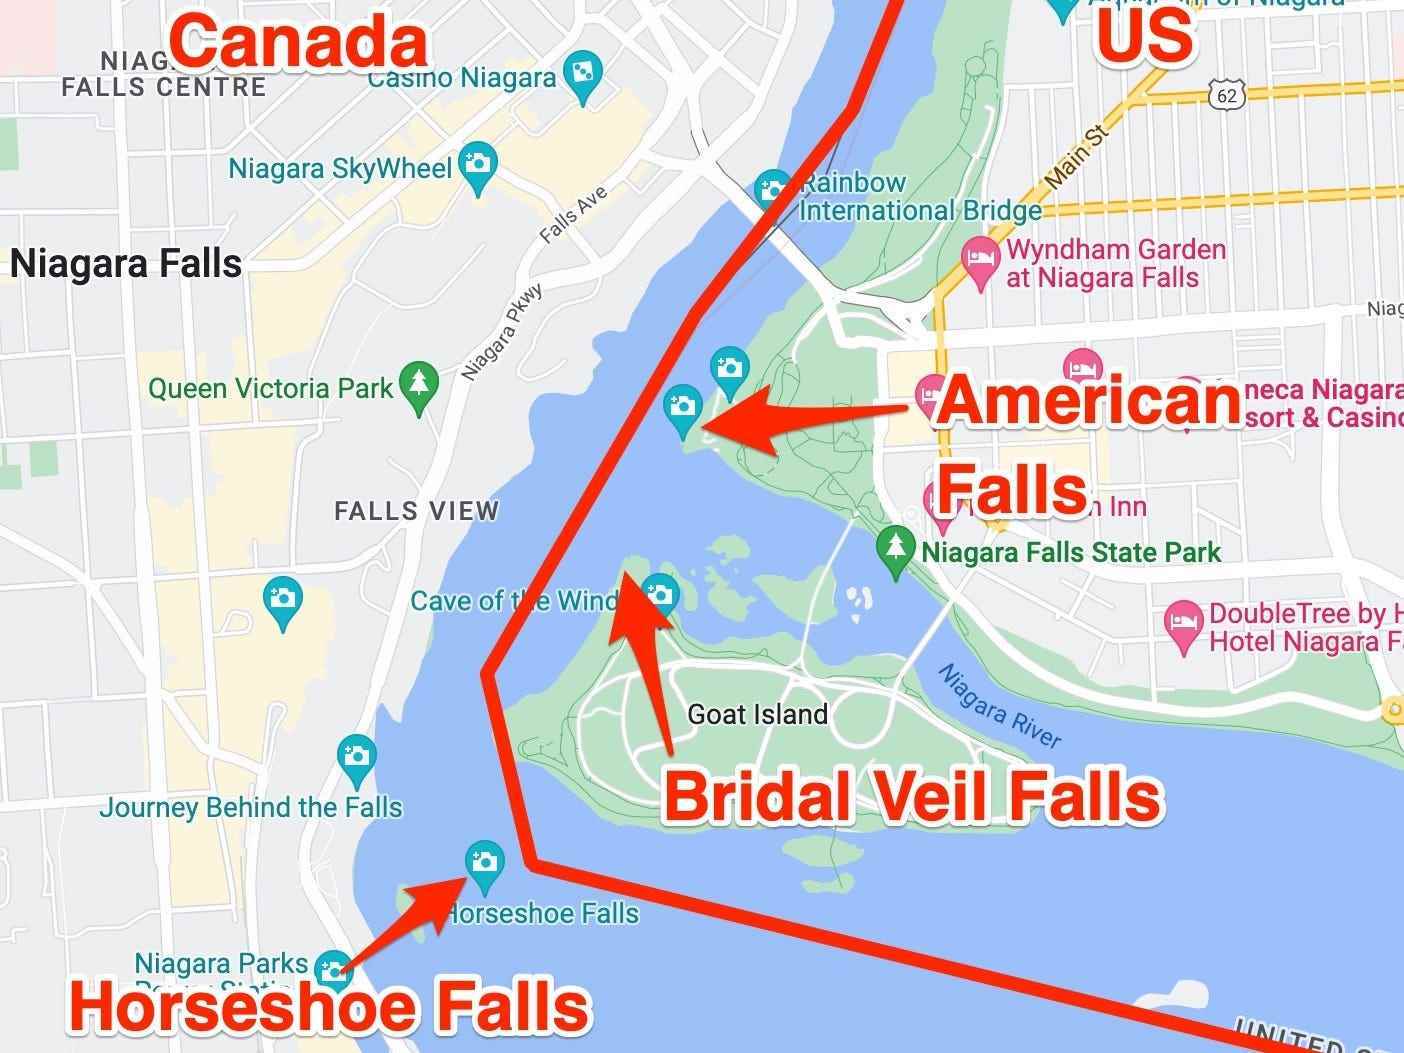 Eine Karte der Niagarafälle in den USA und Kanada